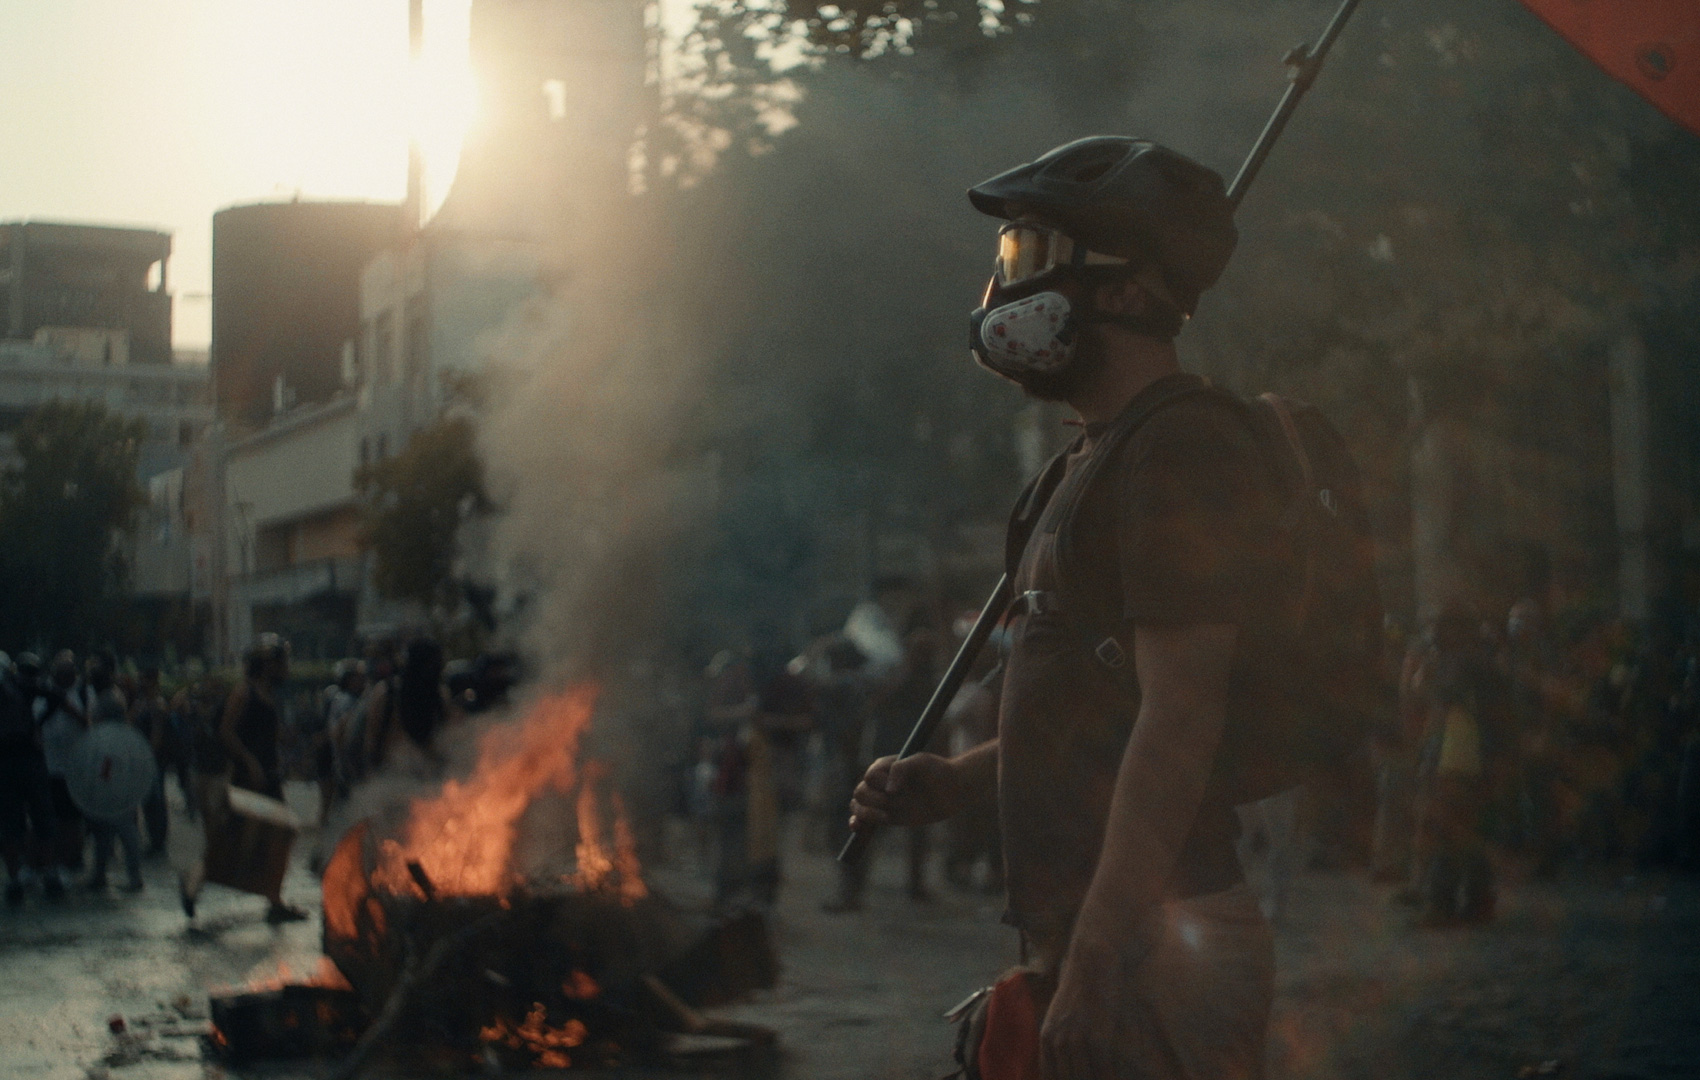 Auf einem Platz in einer Stadt brennt ein Feuer. Die Umgebung ist verraucht. Es findet eine Demonstration statt. Im Vordergrund steht ein Mann mit Helm, Schutzbrille, Atemmaske und Fahne in der Hand.